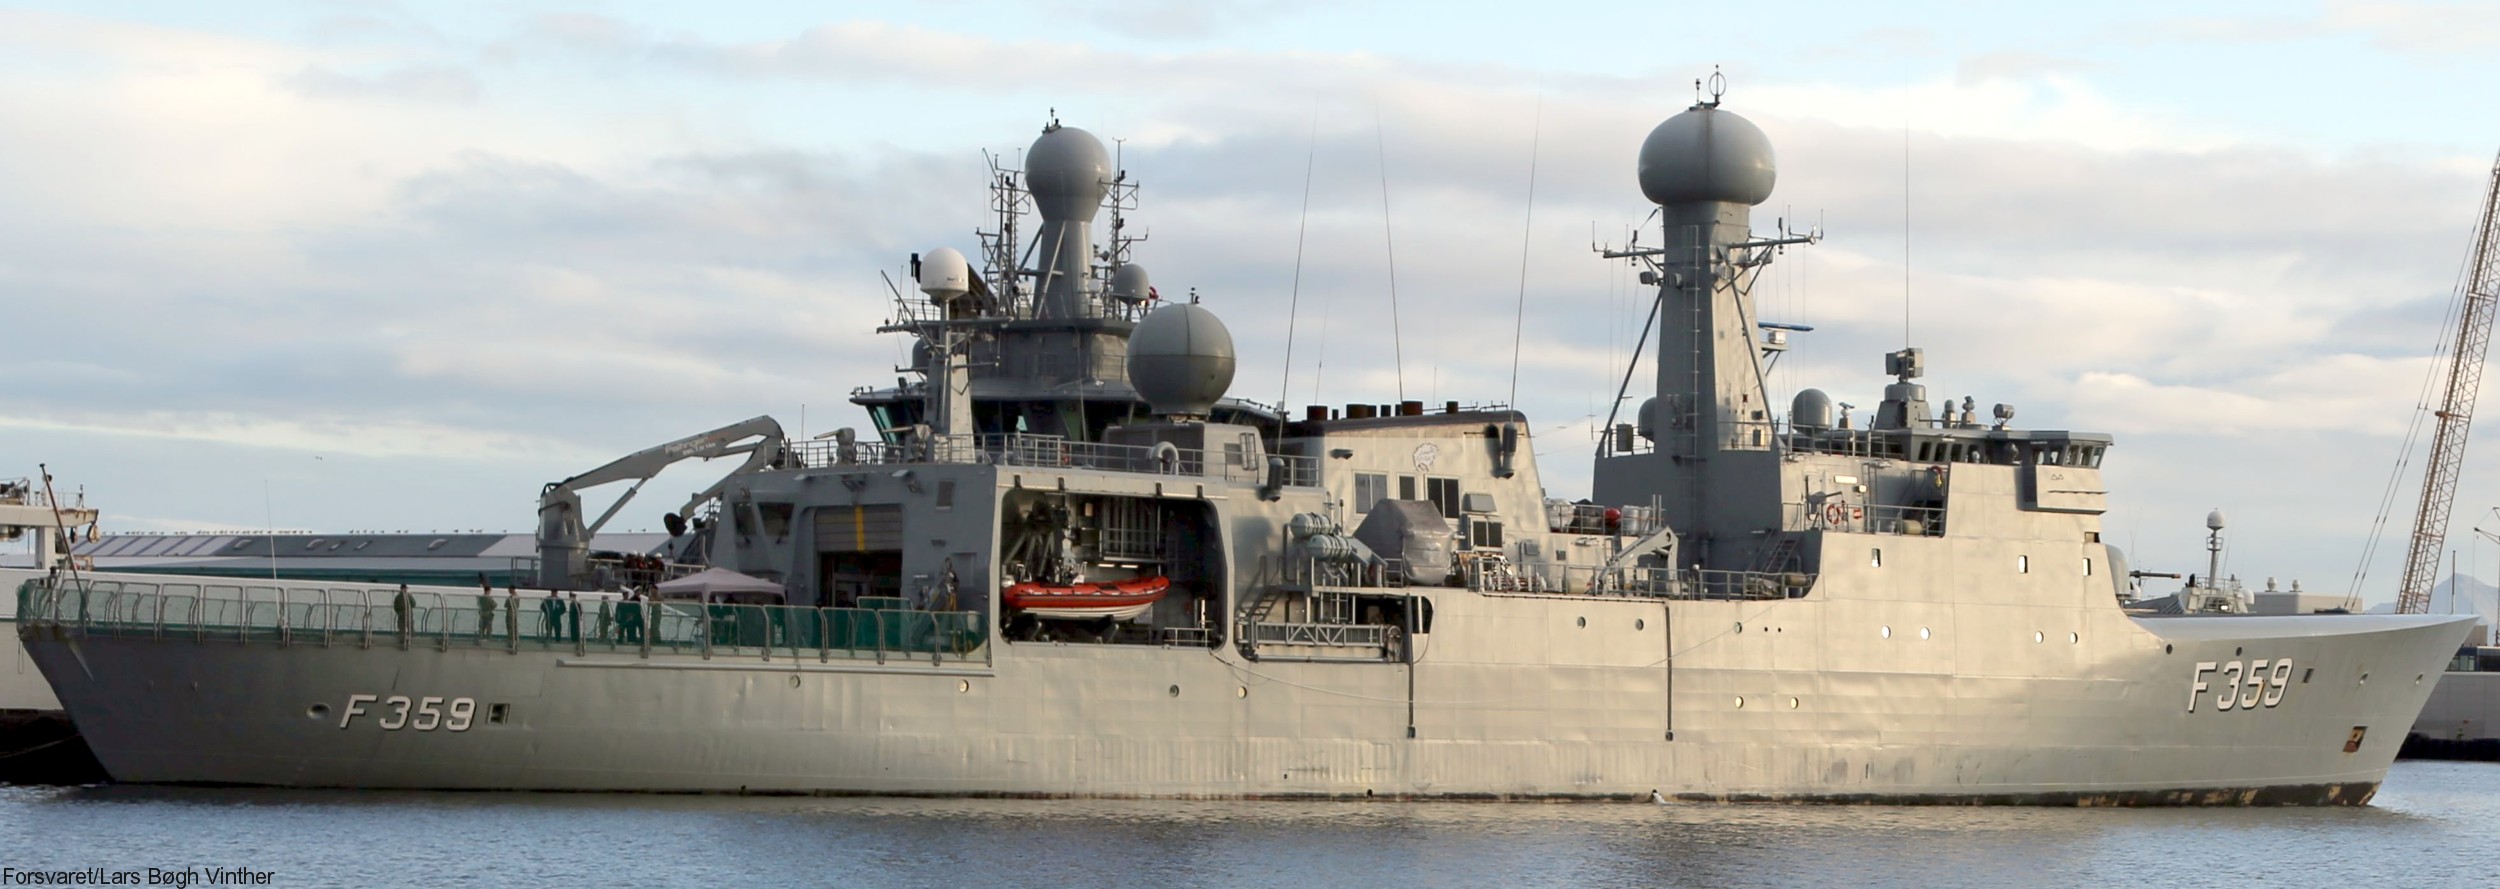 f-359 hdms vaedderen thetis class ocean patrol frigate royal danish navy kongelige danske marine kdm inspektionsskibet 03